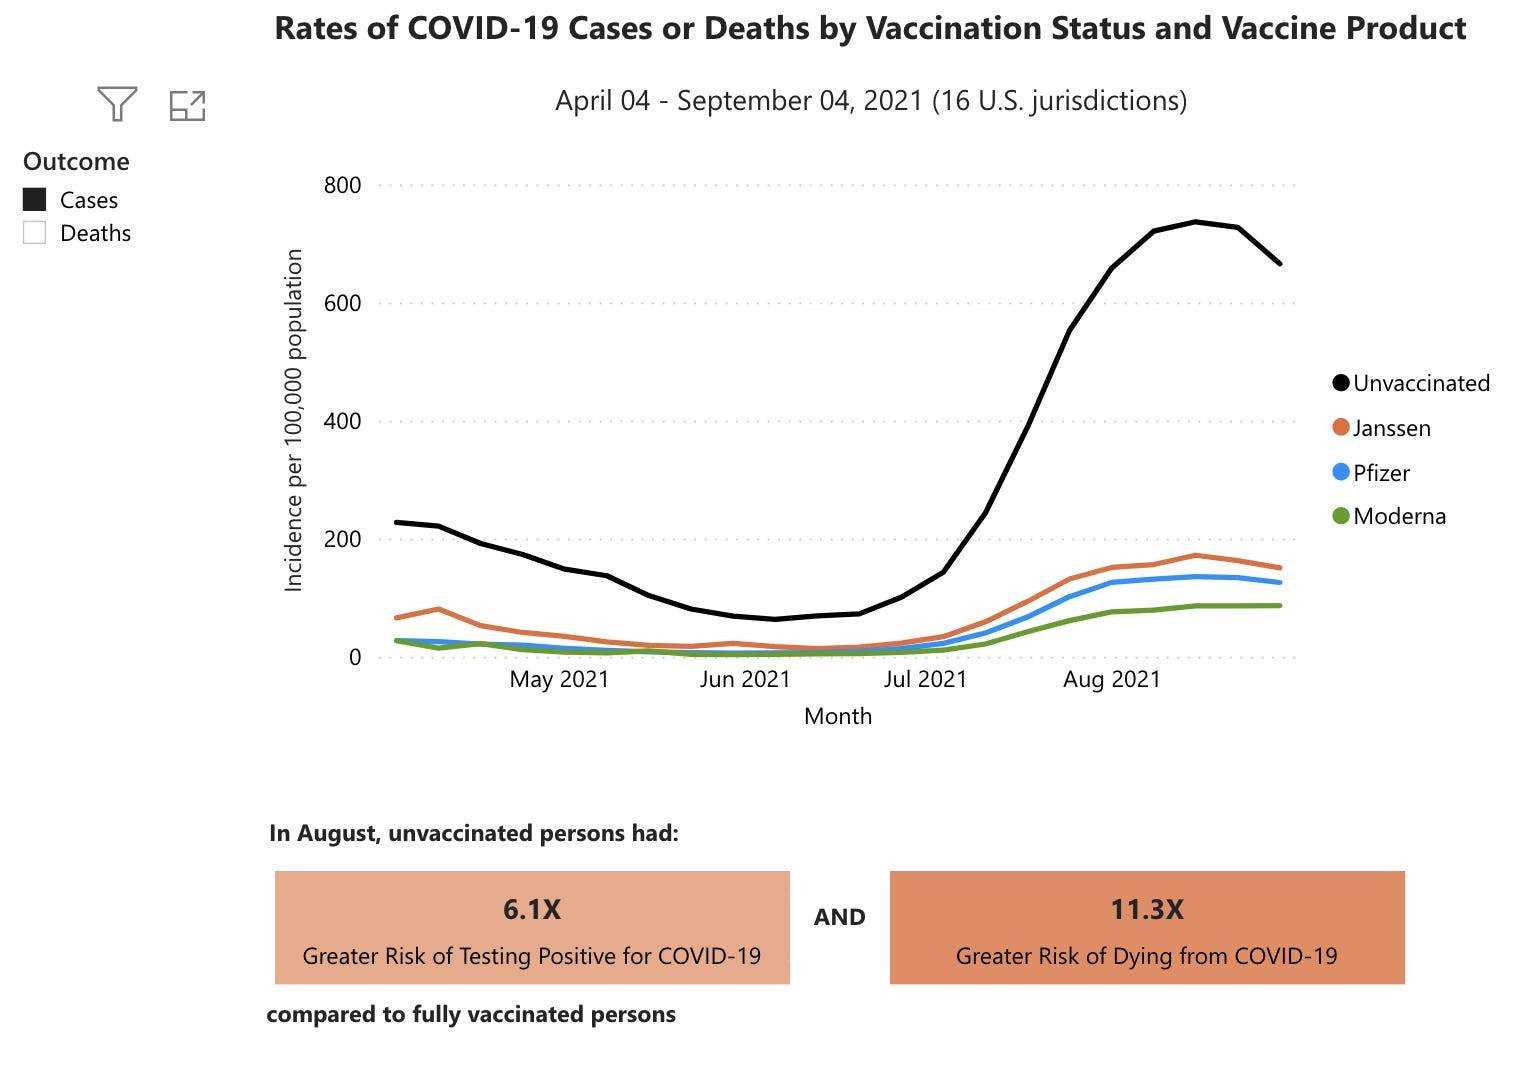 Diagramm der Raten von Covid-19-Fällen, das weit höhere Raten für Ungeimpfte zeigt, aber unter Geimpften: j&j am höchsten und moderna am niedrigsten